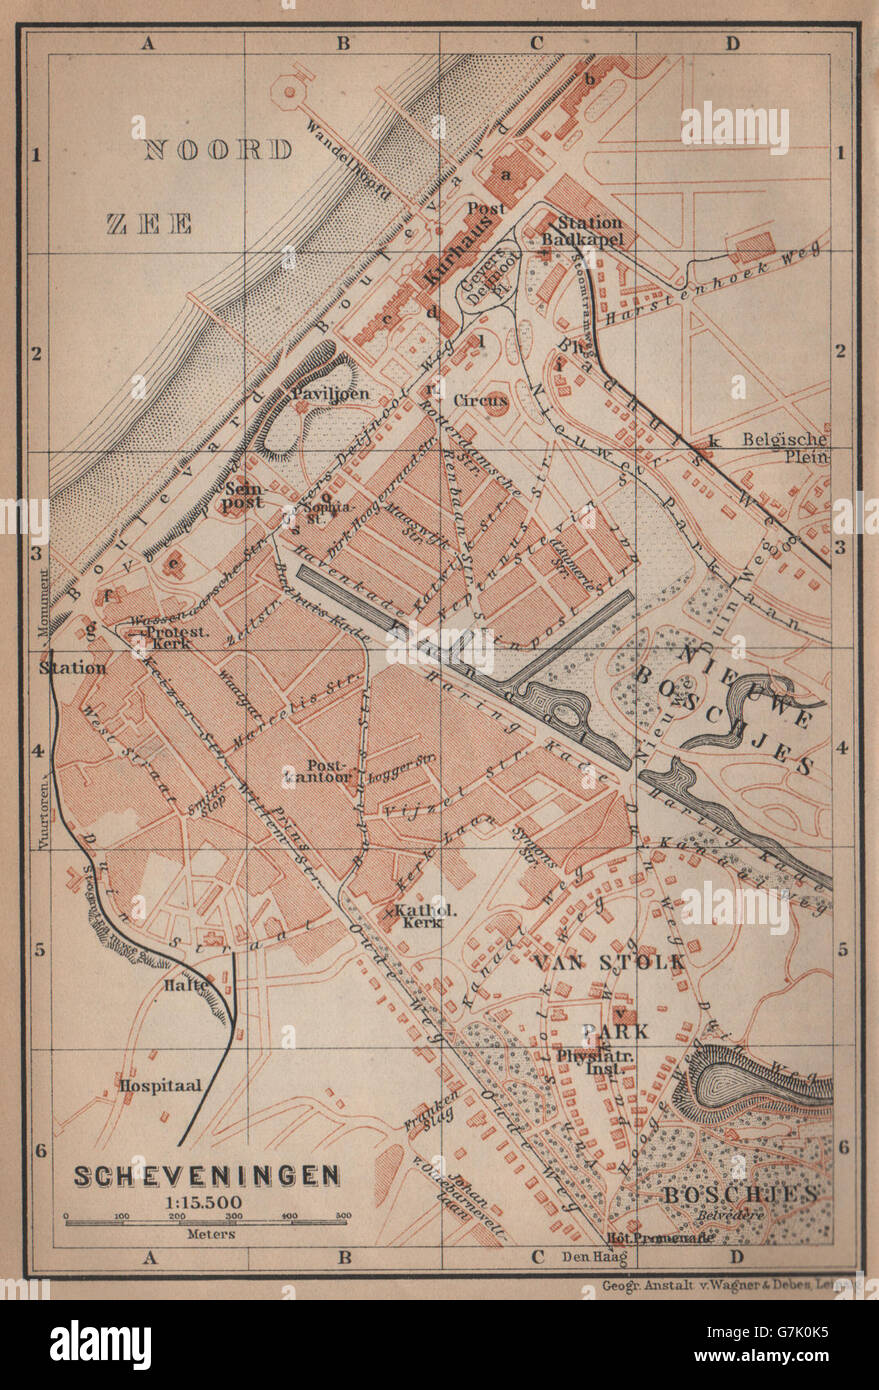 Ciudad de Scheveningen stadsplan. Den Haag La Haya. Países Bajos, 1905 mapa Foto de stock